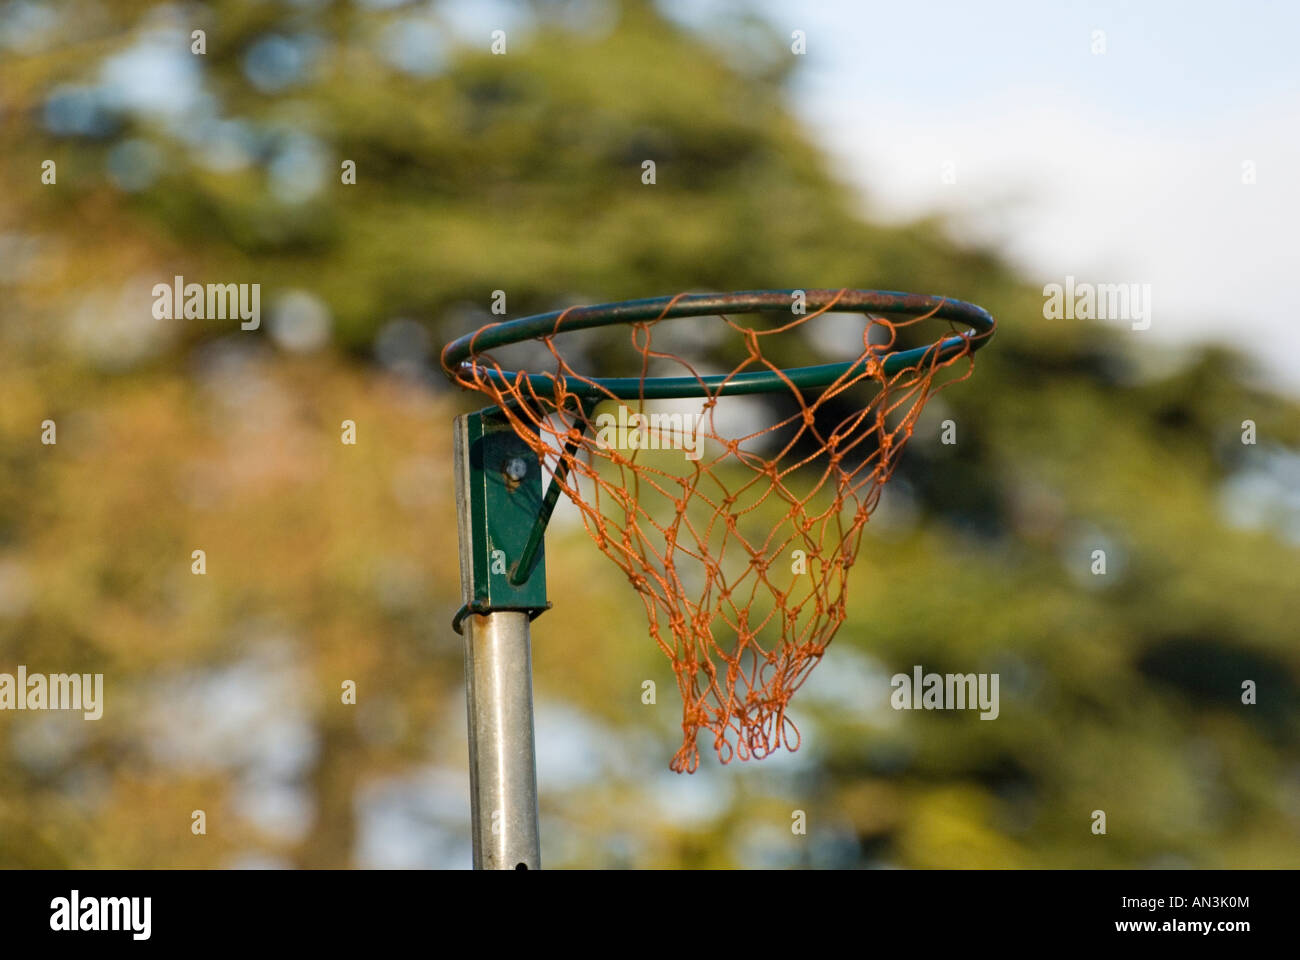 Netball hoop Stock Photo